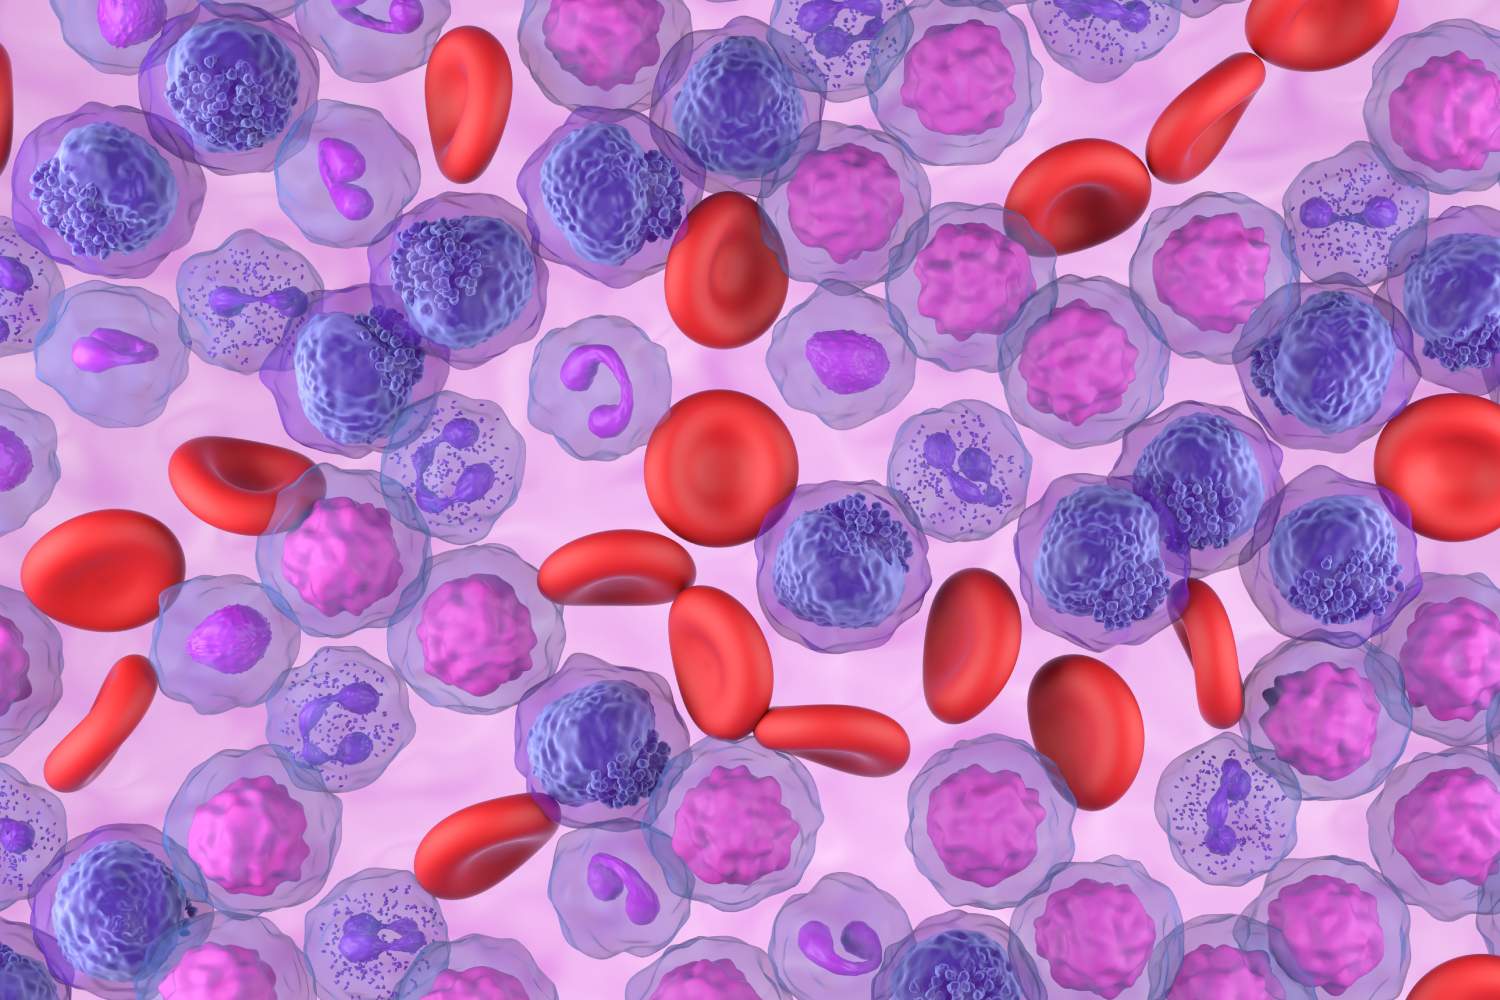 Ilustración de leucemia mieloide aguda (LMA). Foto: SHUTTERSTOCK. 